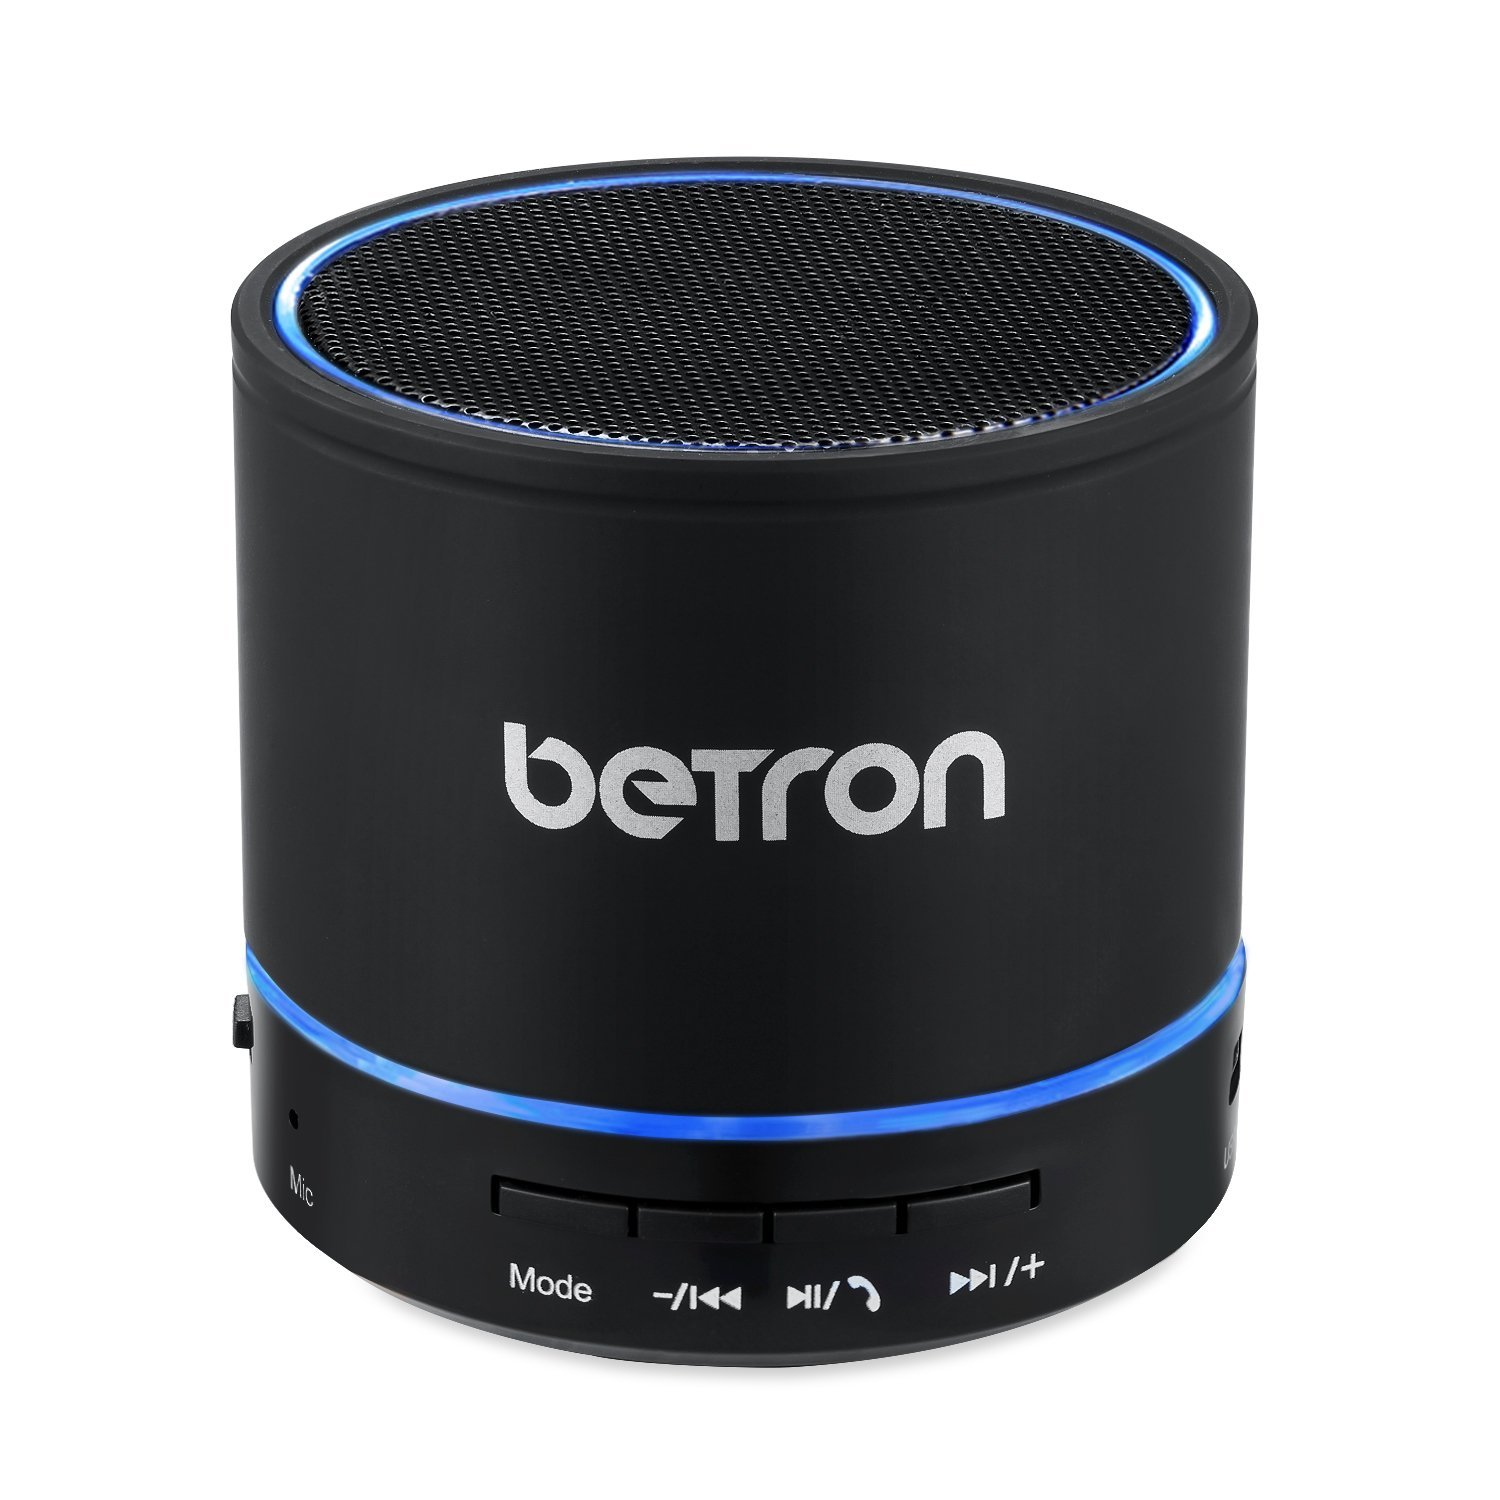 Win a Betron Wireless Speaker